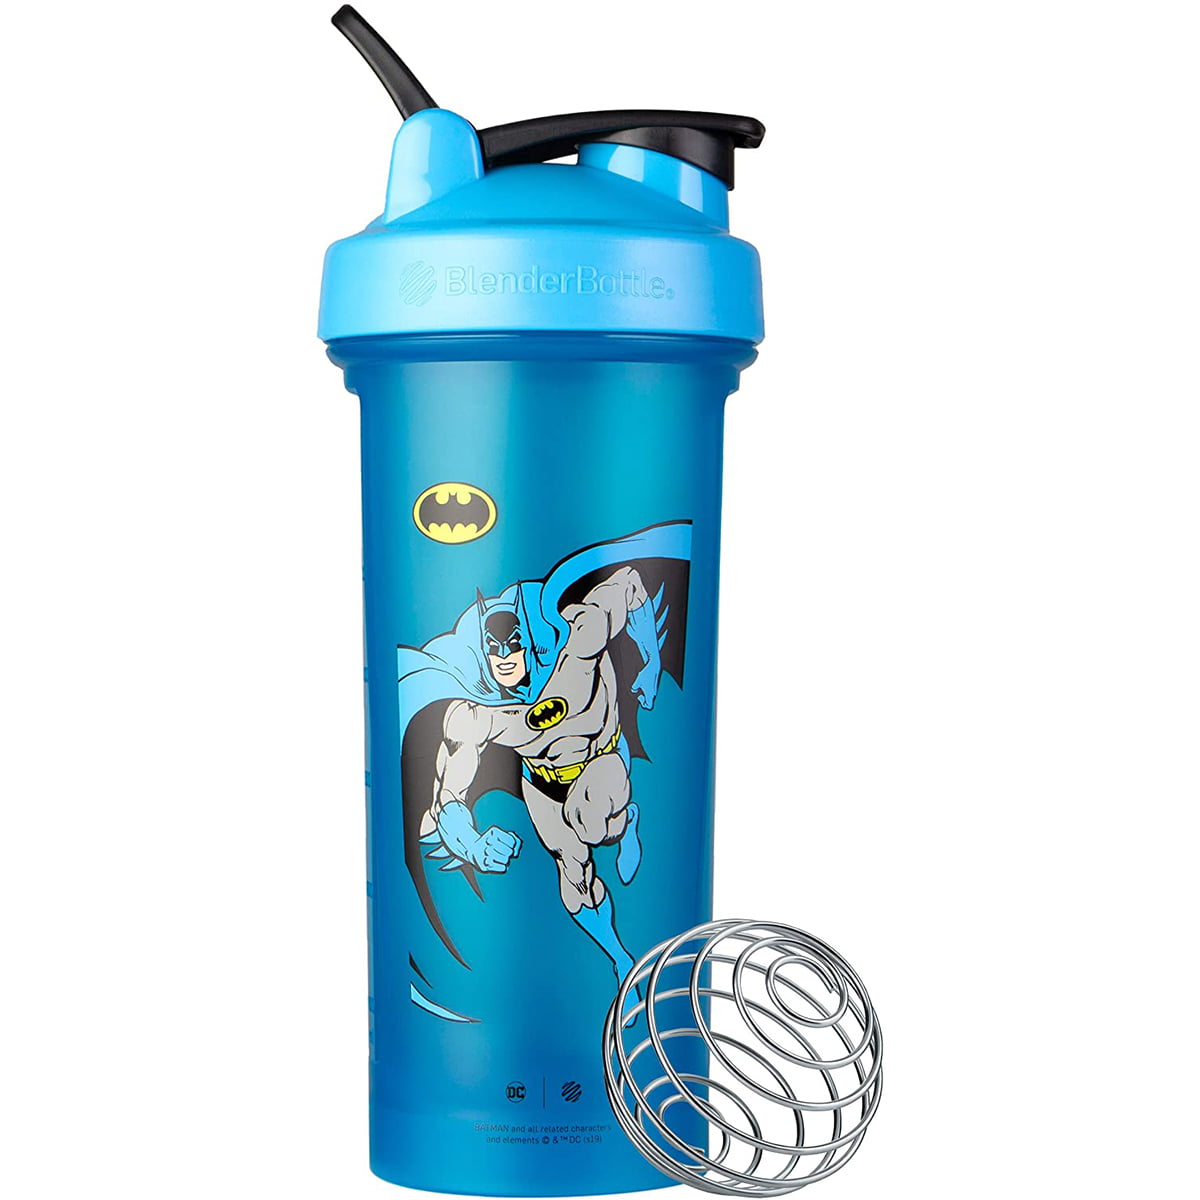 Blender Bottle Classic 28 oz. DC Comics SpoutGuard Shaker - Batman 